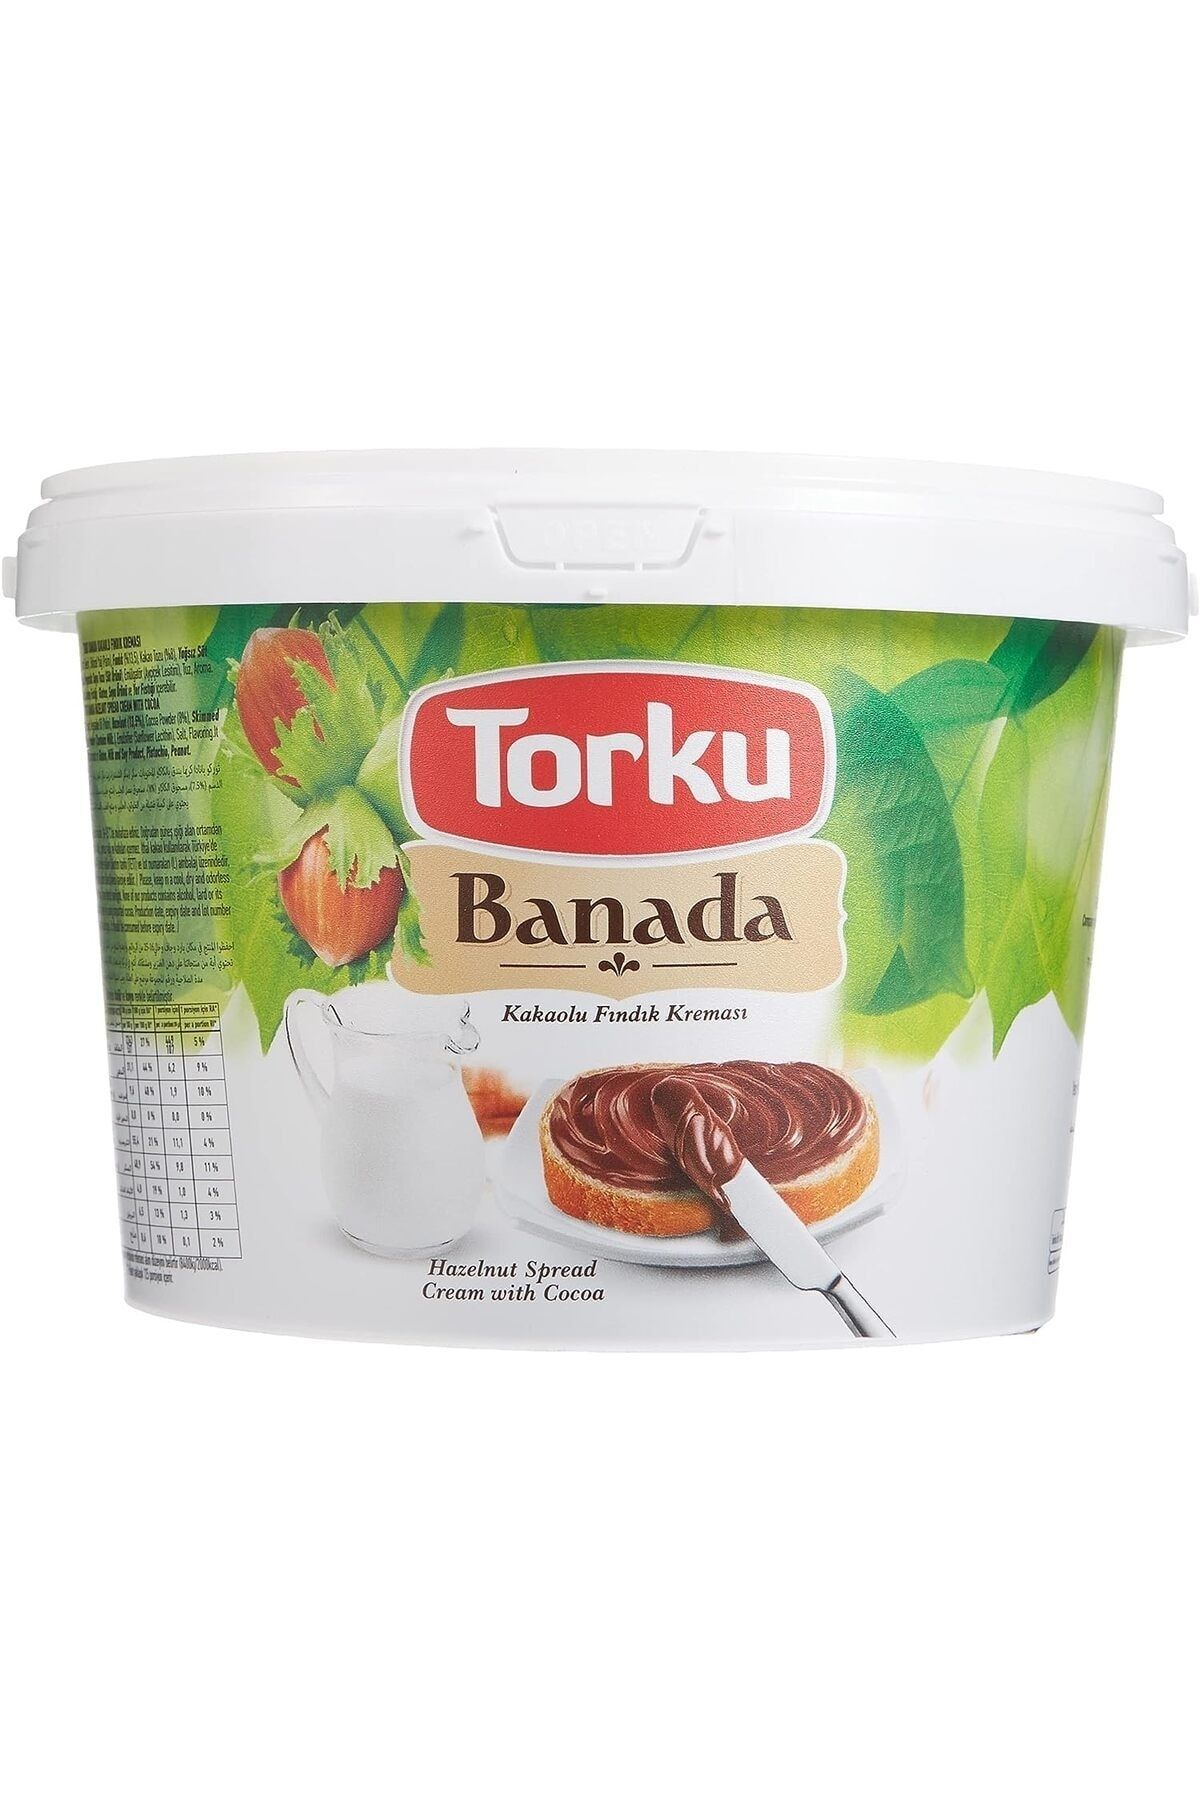 Torku Banada Kakolu Fındık Kreması 2.5 KG